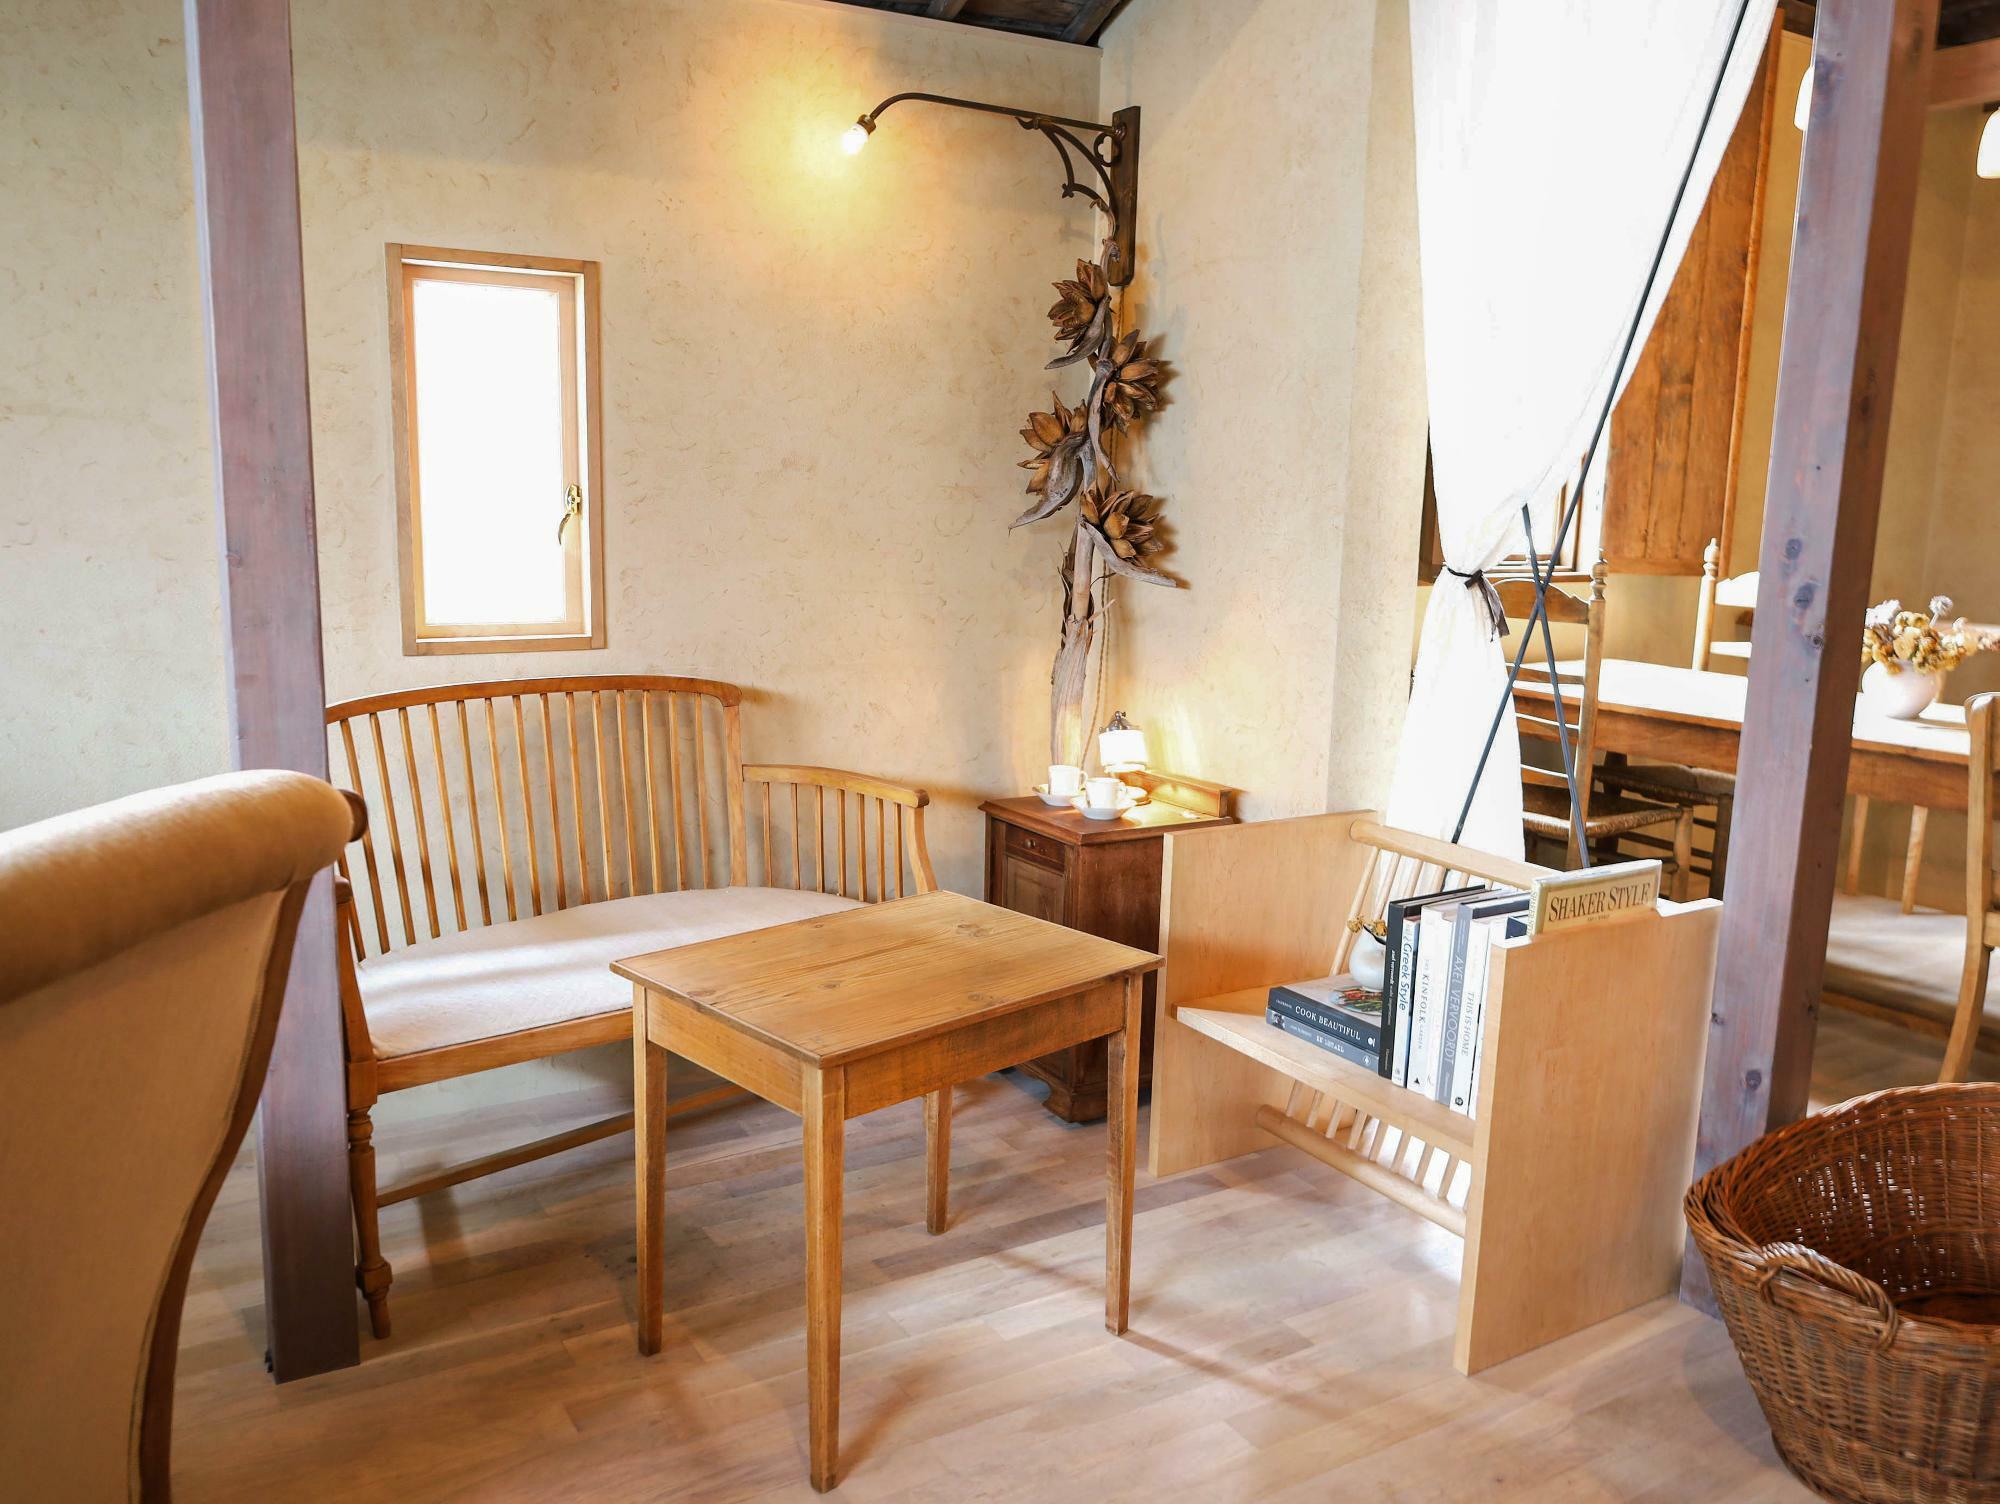 カフェの家具はすべて購入可能。椅子は1脚3万円前後、二人がけテーブルは9〜13万円ほど